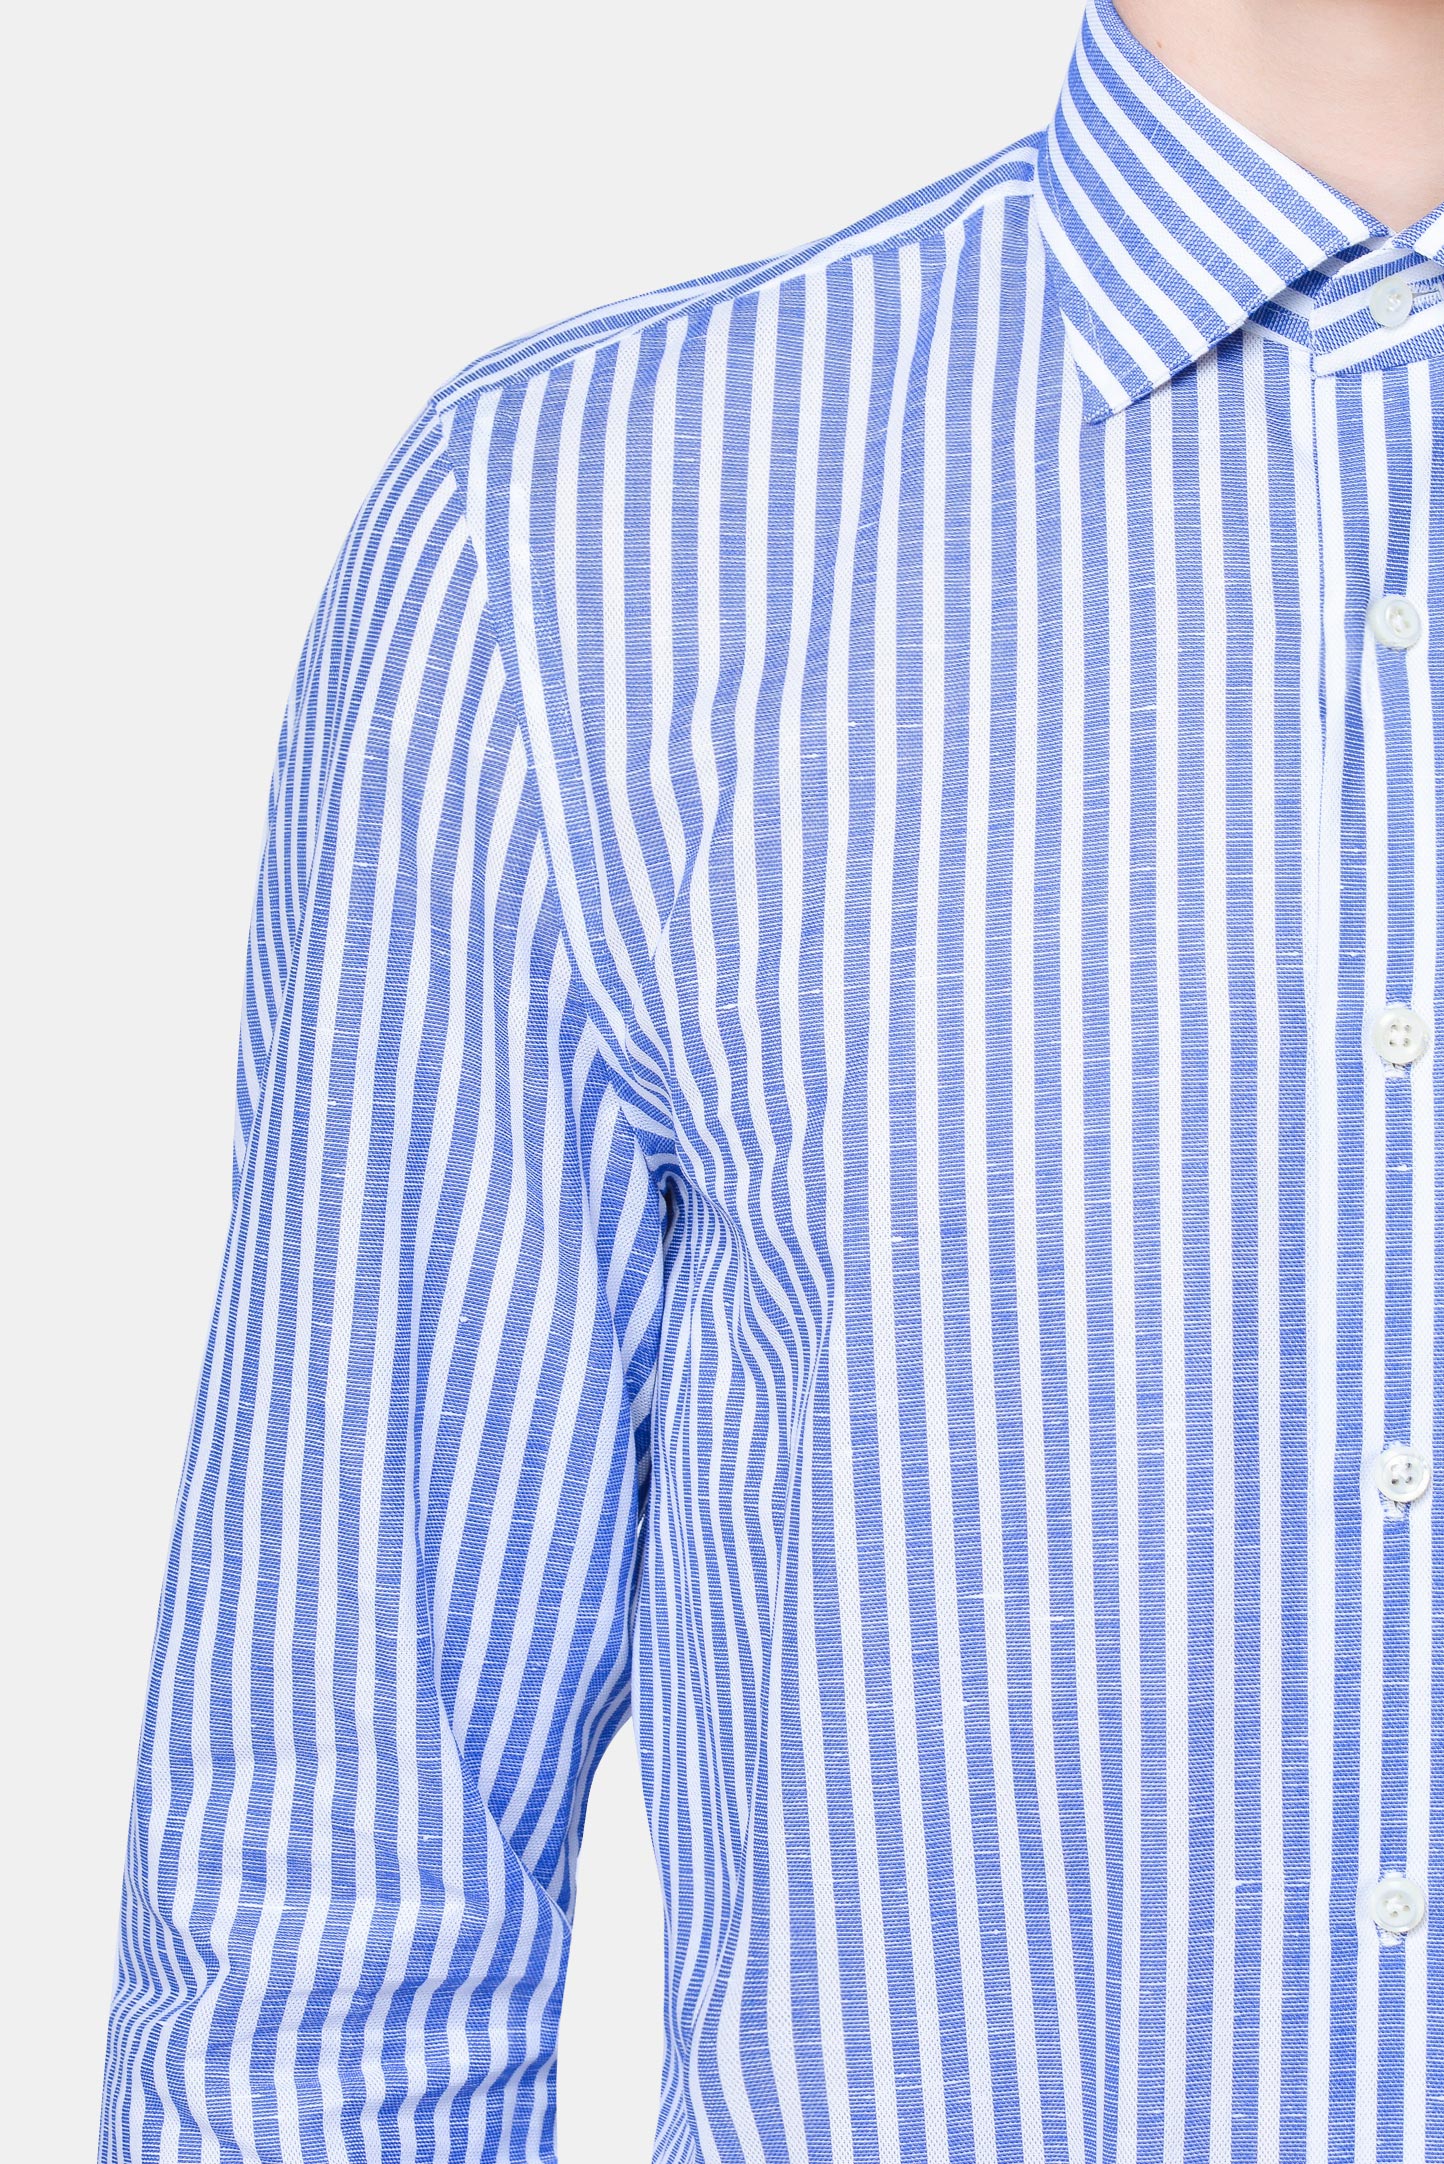 Рубашка CESARE ATTOLINI CAU28/MIKE S20CM14, цвет: Синий, Мужской